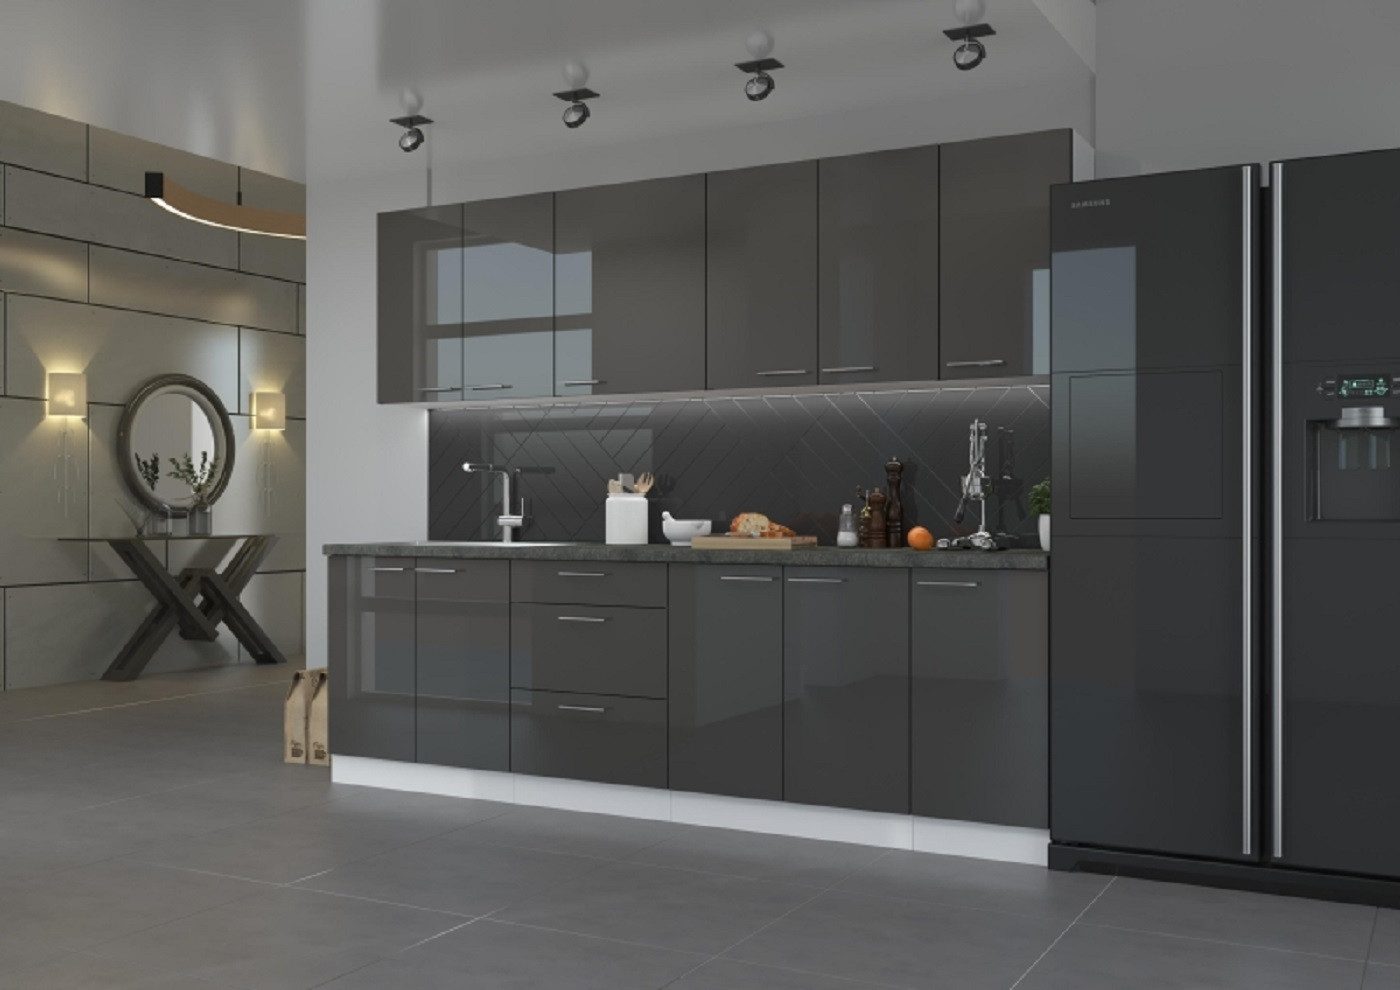 ROYAL24_MARKT Küchenzeile - Natürliches Flair für Ihre Küche, Modernes Design - epische Küche.